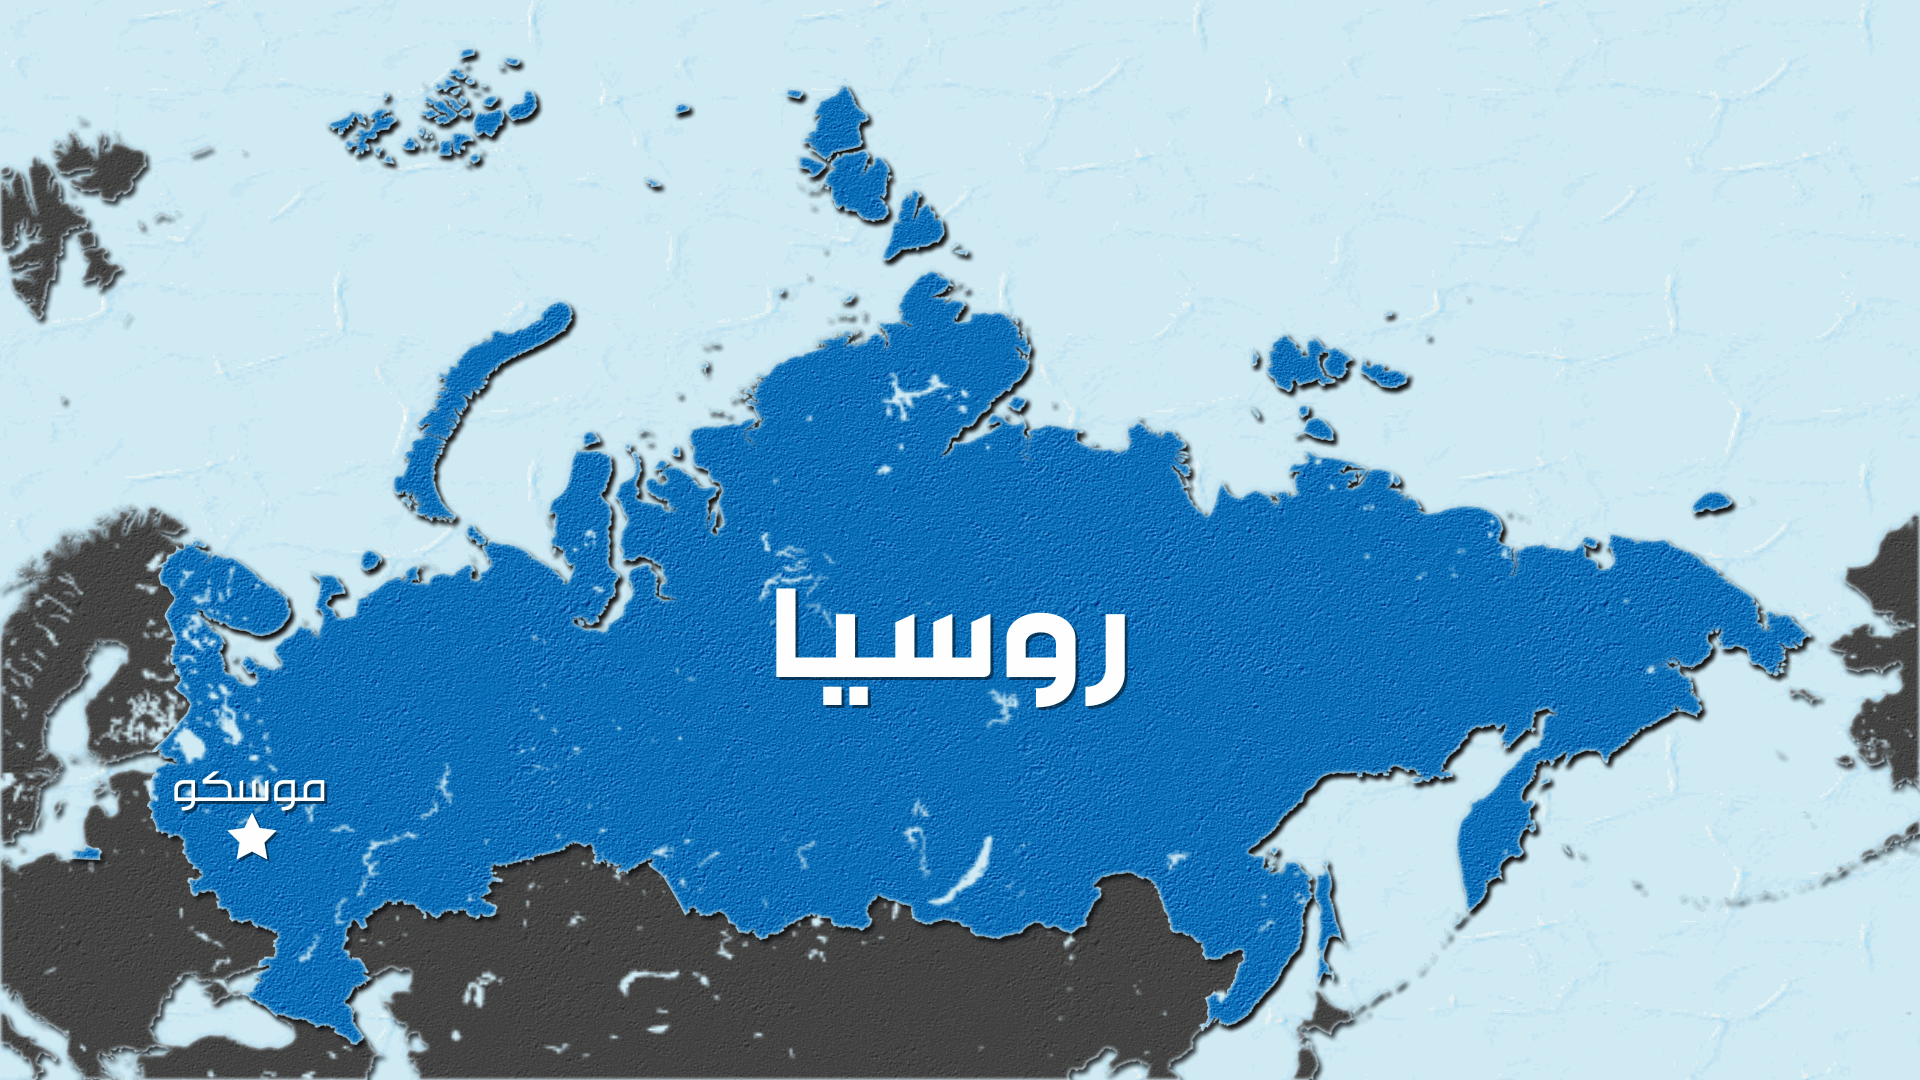 مصدر أوكراني لرويترز: قصف منشأة إنتاج رئيسية بمصنع طيران روسي في منطقة فارونيش